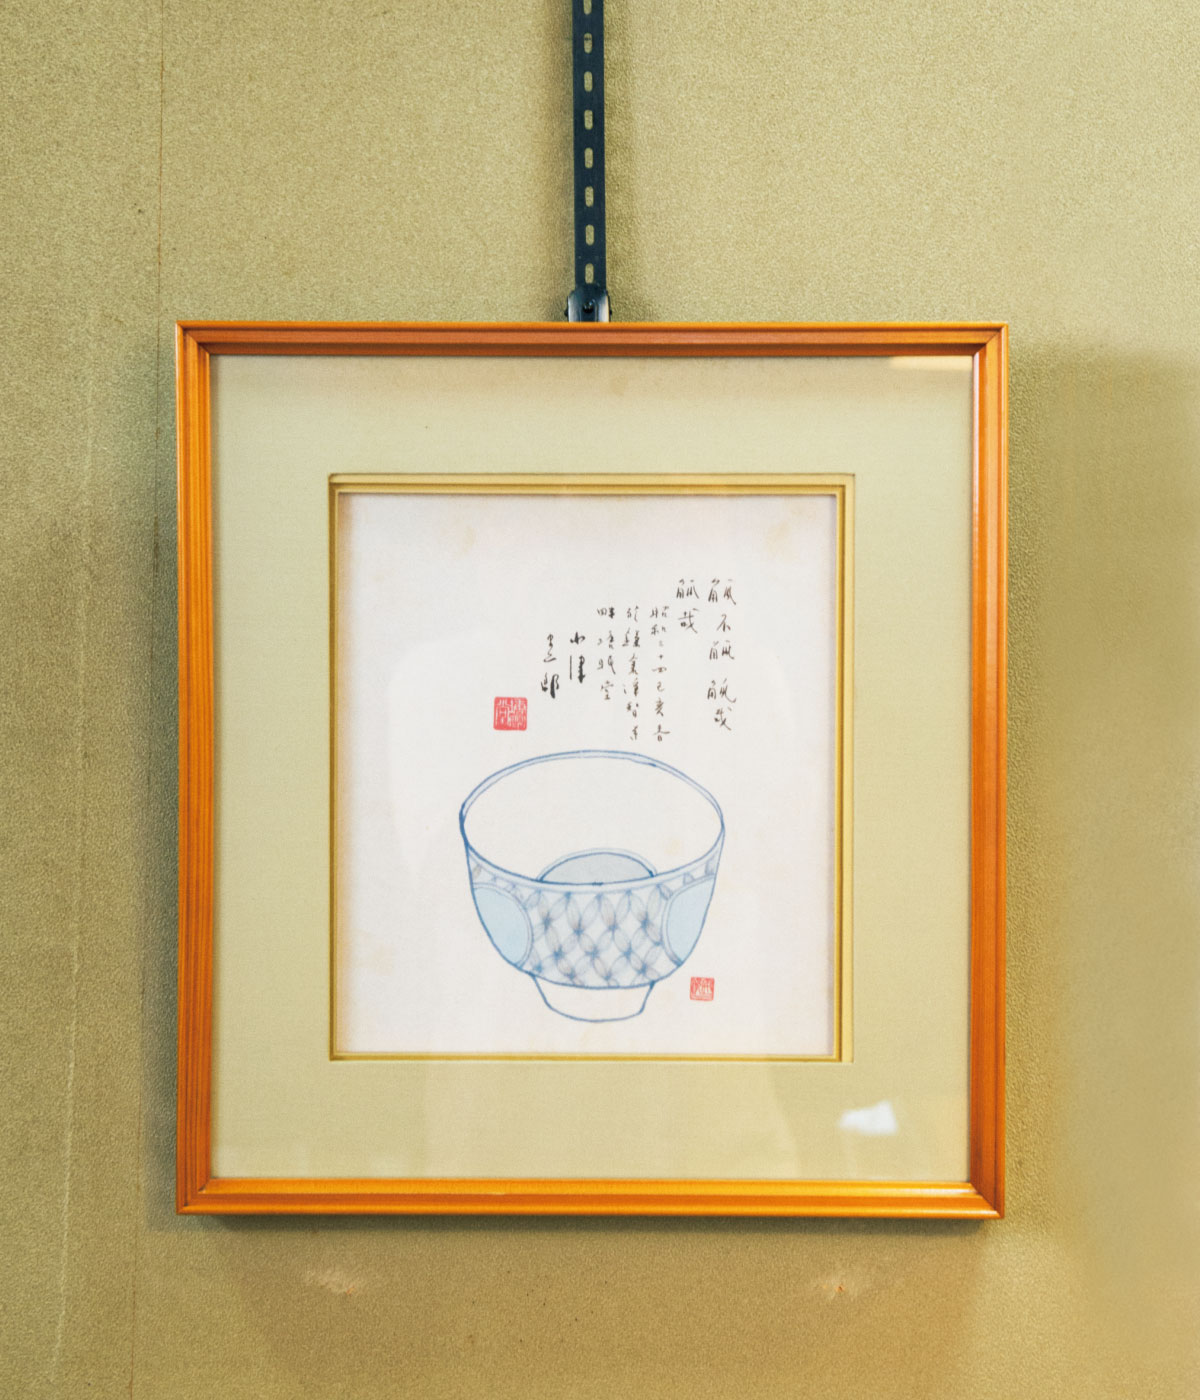 小津が昭和34（1959）年に揮毫した額。味のある字、しゃれた絵。さすがのグラフィックセンスだ。